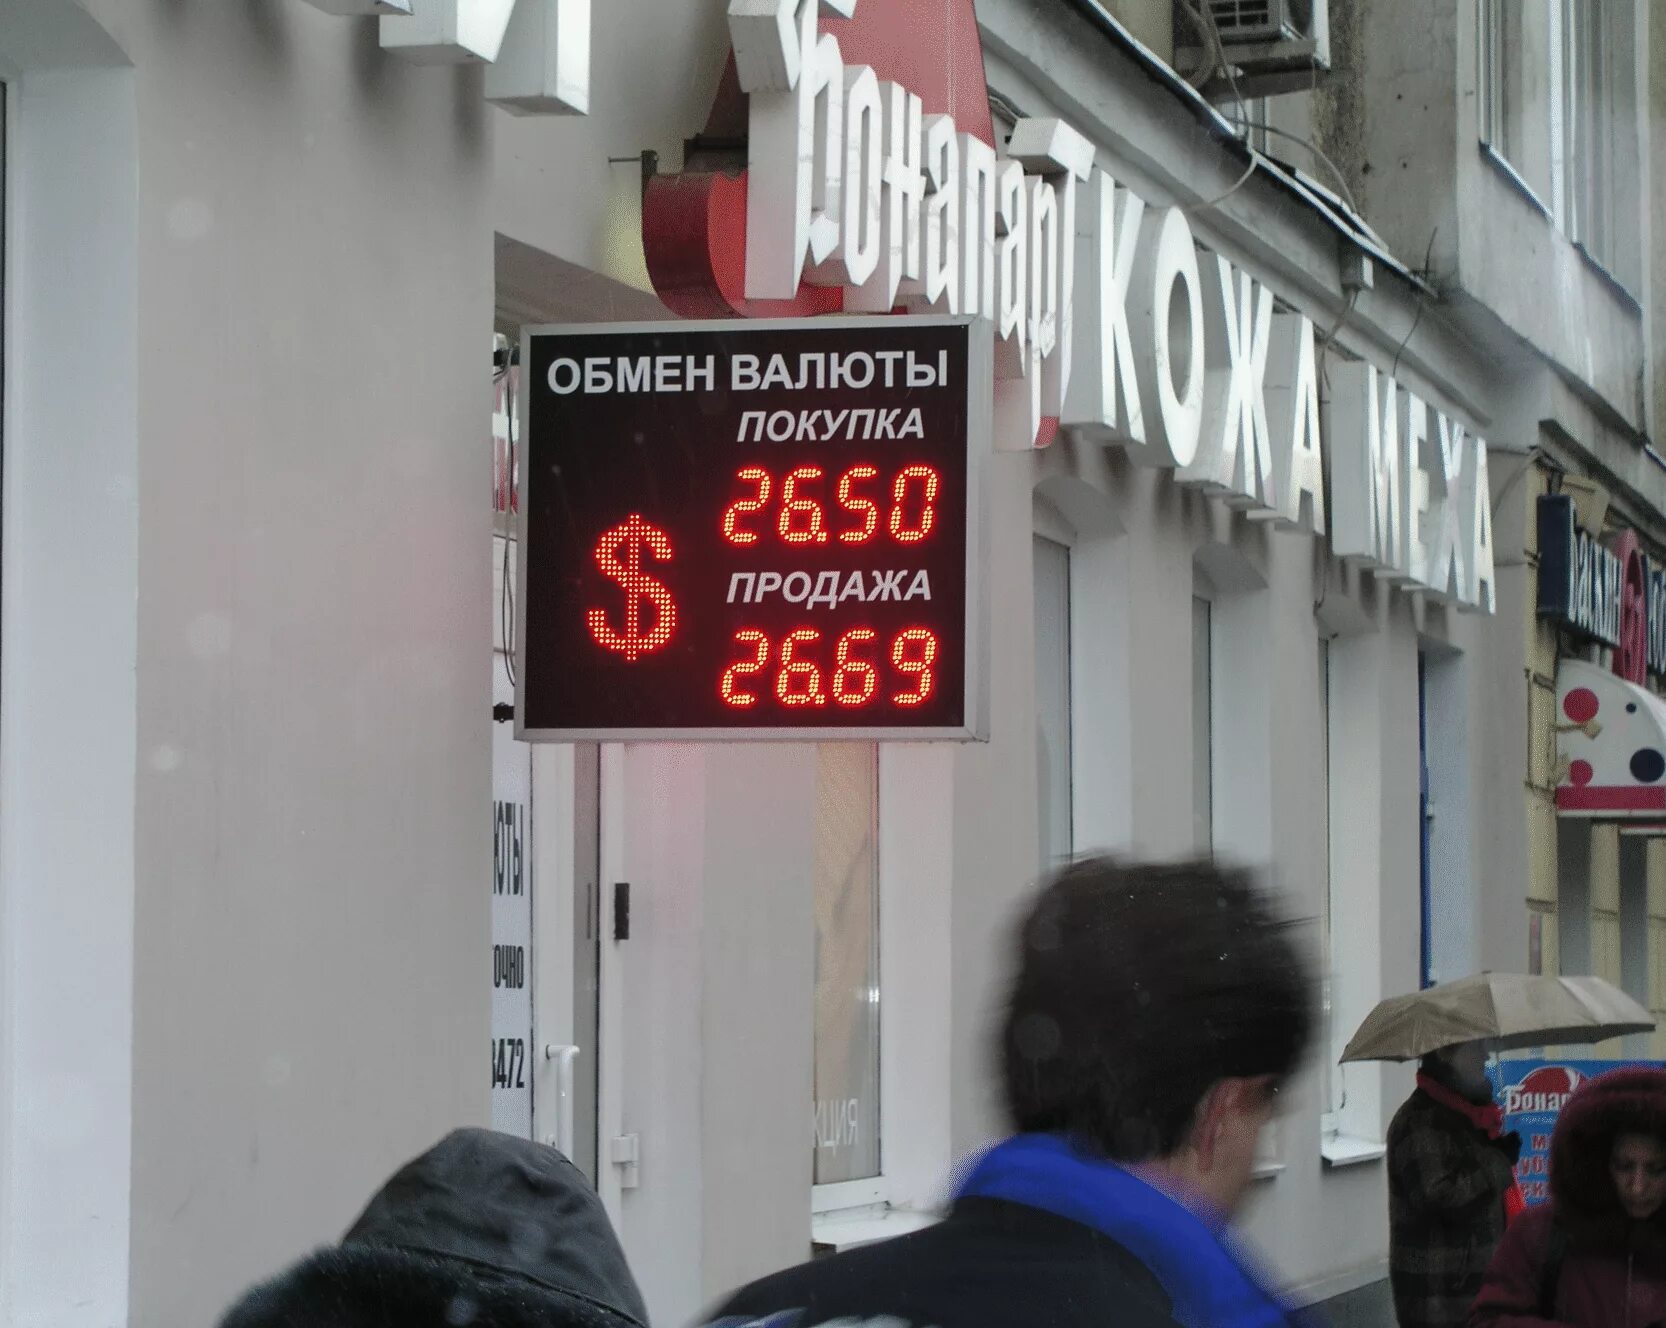 Курс рубля москва сегодня. Обмен валюты. Обменник валют. Табло обмена валют. Обменный пункт валюты.